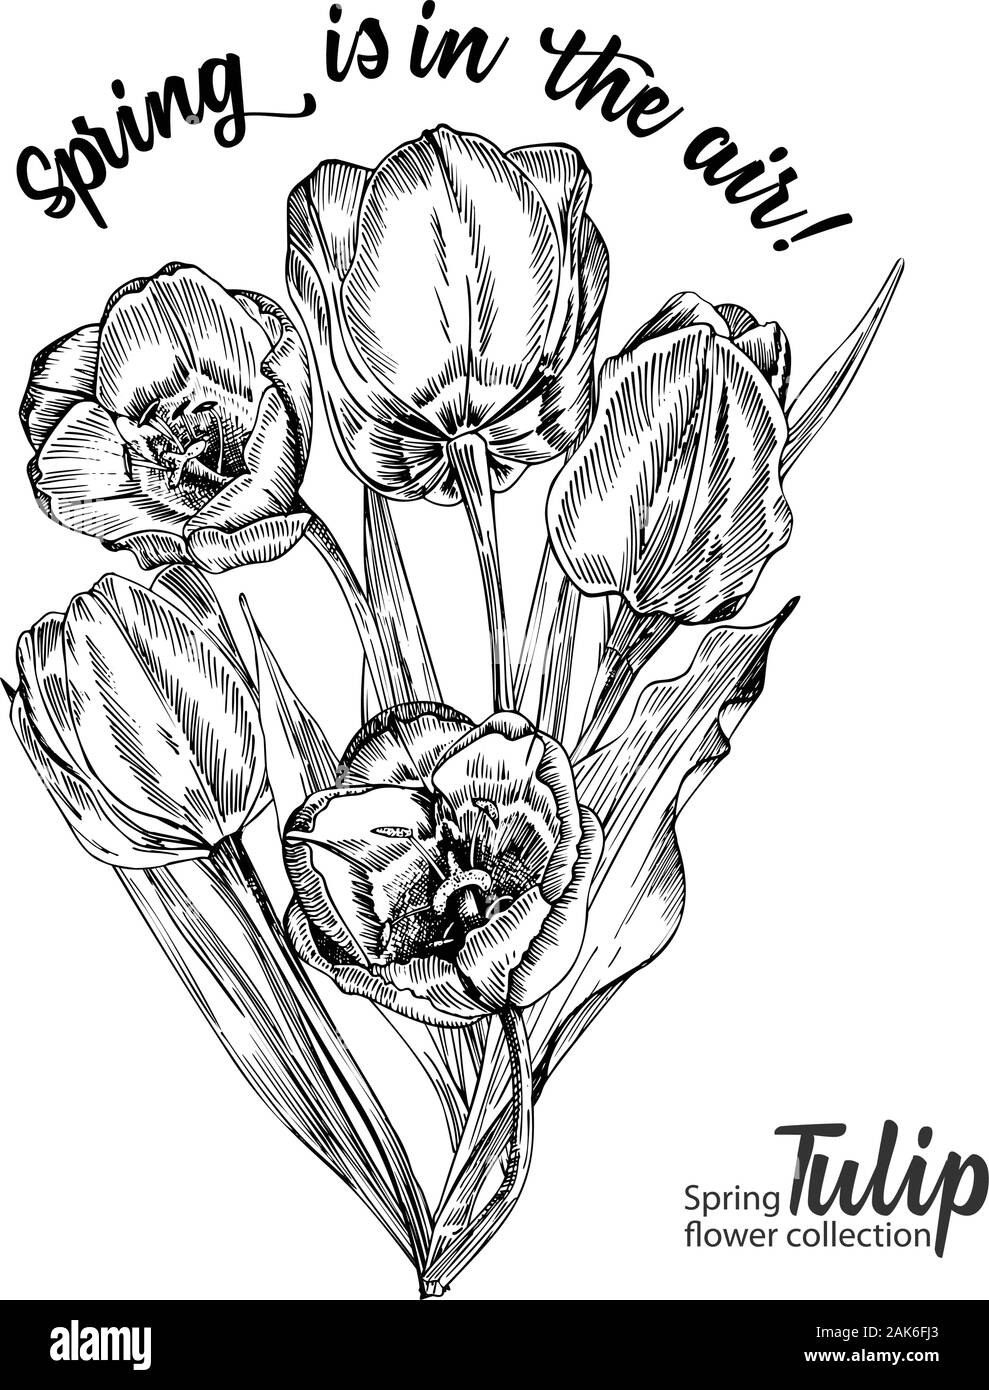 Fleurs de Printemps bouquet de tulipes sur fond blanc. Le style de dessin gravure en ligne. Nature botanique croquis réalistes pour motif floral de mariage Illustration de Vecteur